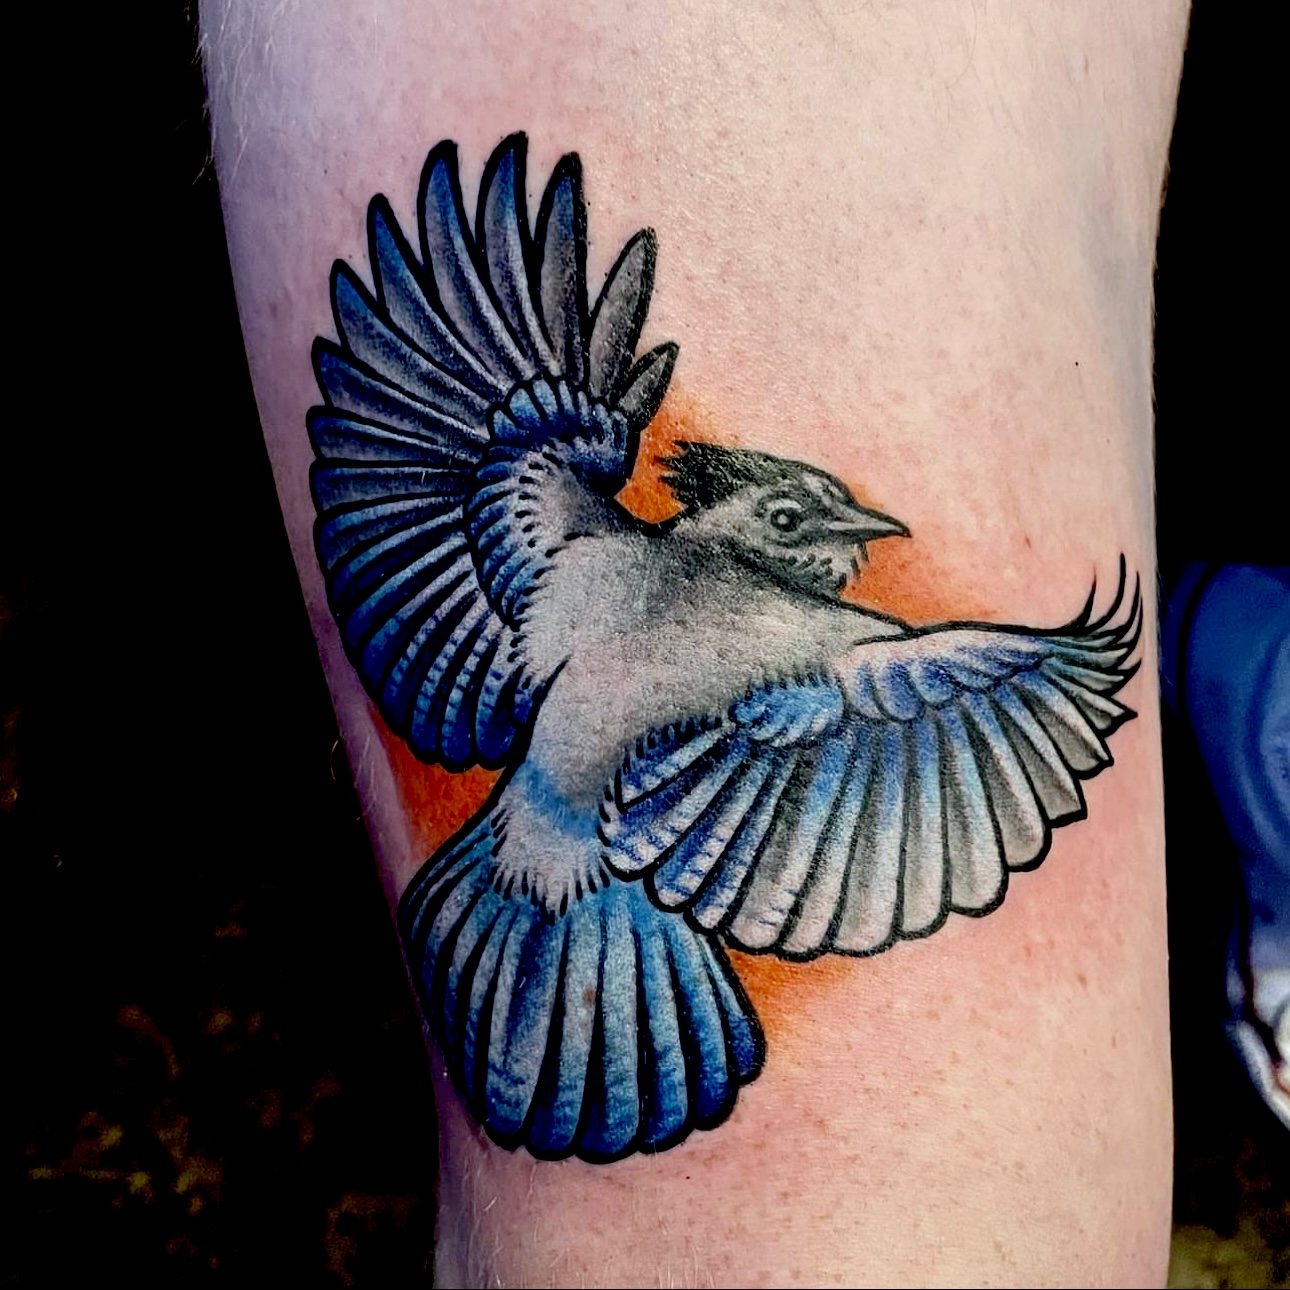 Tattoo of a blue bird